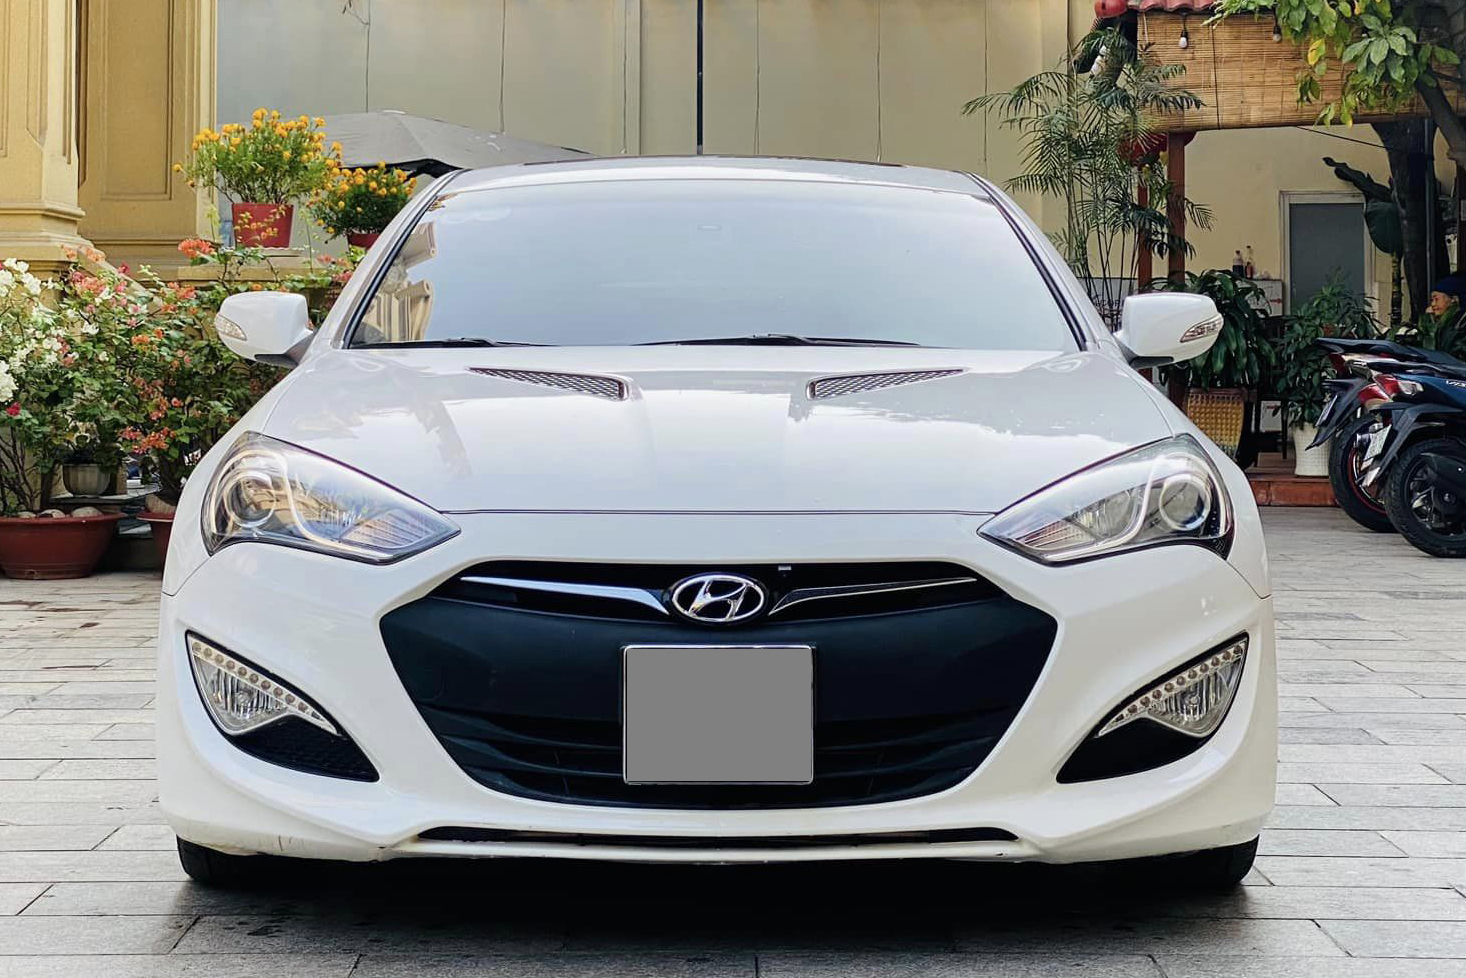 Chiếc Hyundai Genesis Coupe này giữ giá hơn Camry cùng đời: Sau 12 năm vẫn còn gần 540 triệu, mỗi năm chỉ đi hơn 2.000km- Ảnh 4.